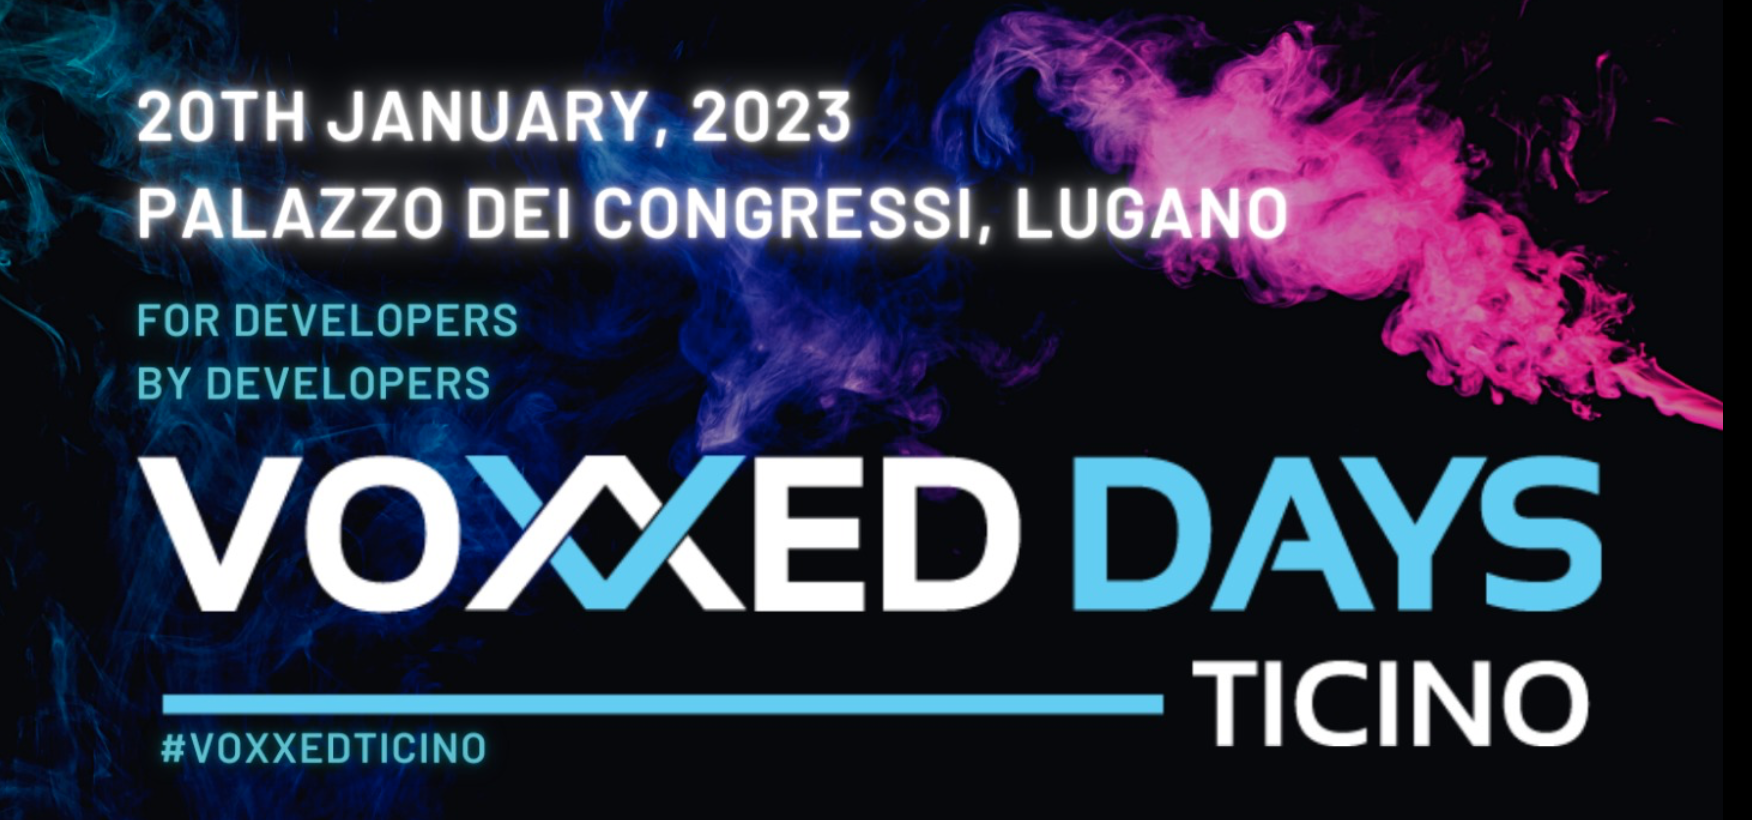 Voxxed Days: 2023 წლის "Voxxed Days Ticino"-ს პოსტერი და ლოგო